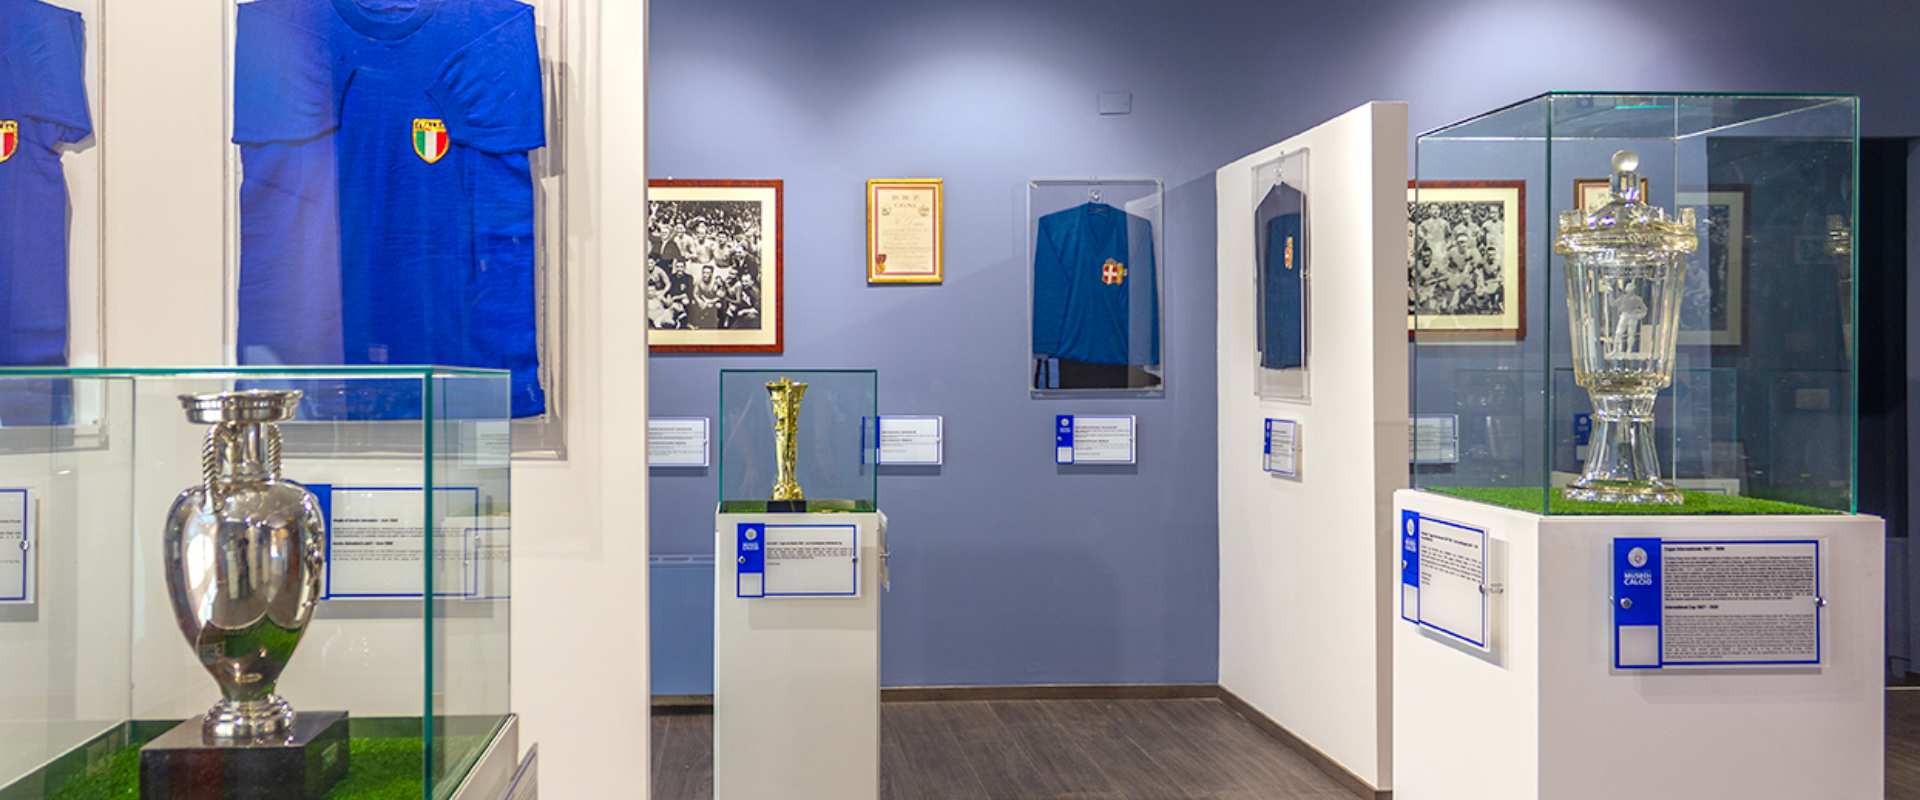 Das Fußballmuseum